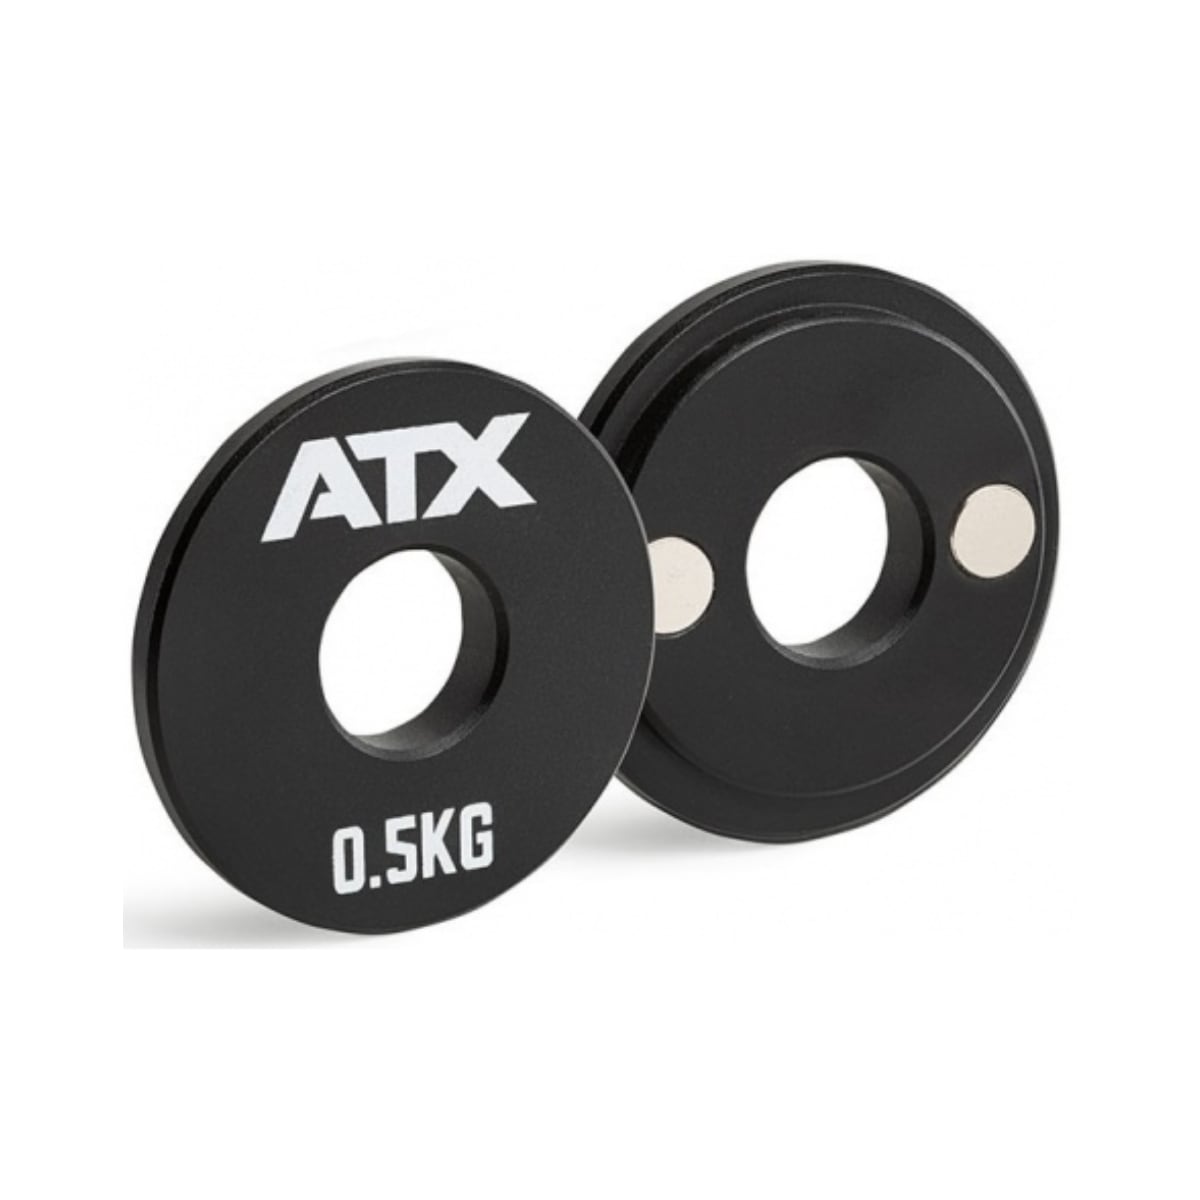 Atx Magnetisk add on vægt 0,5 kg